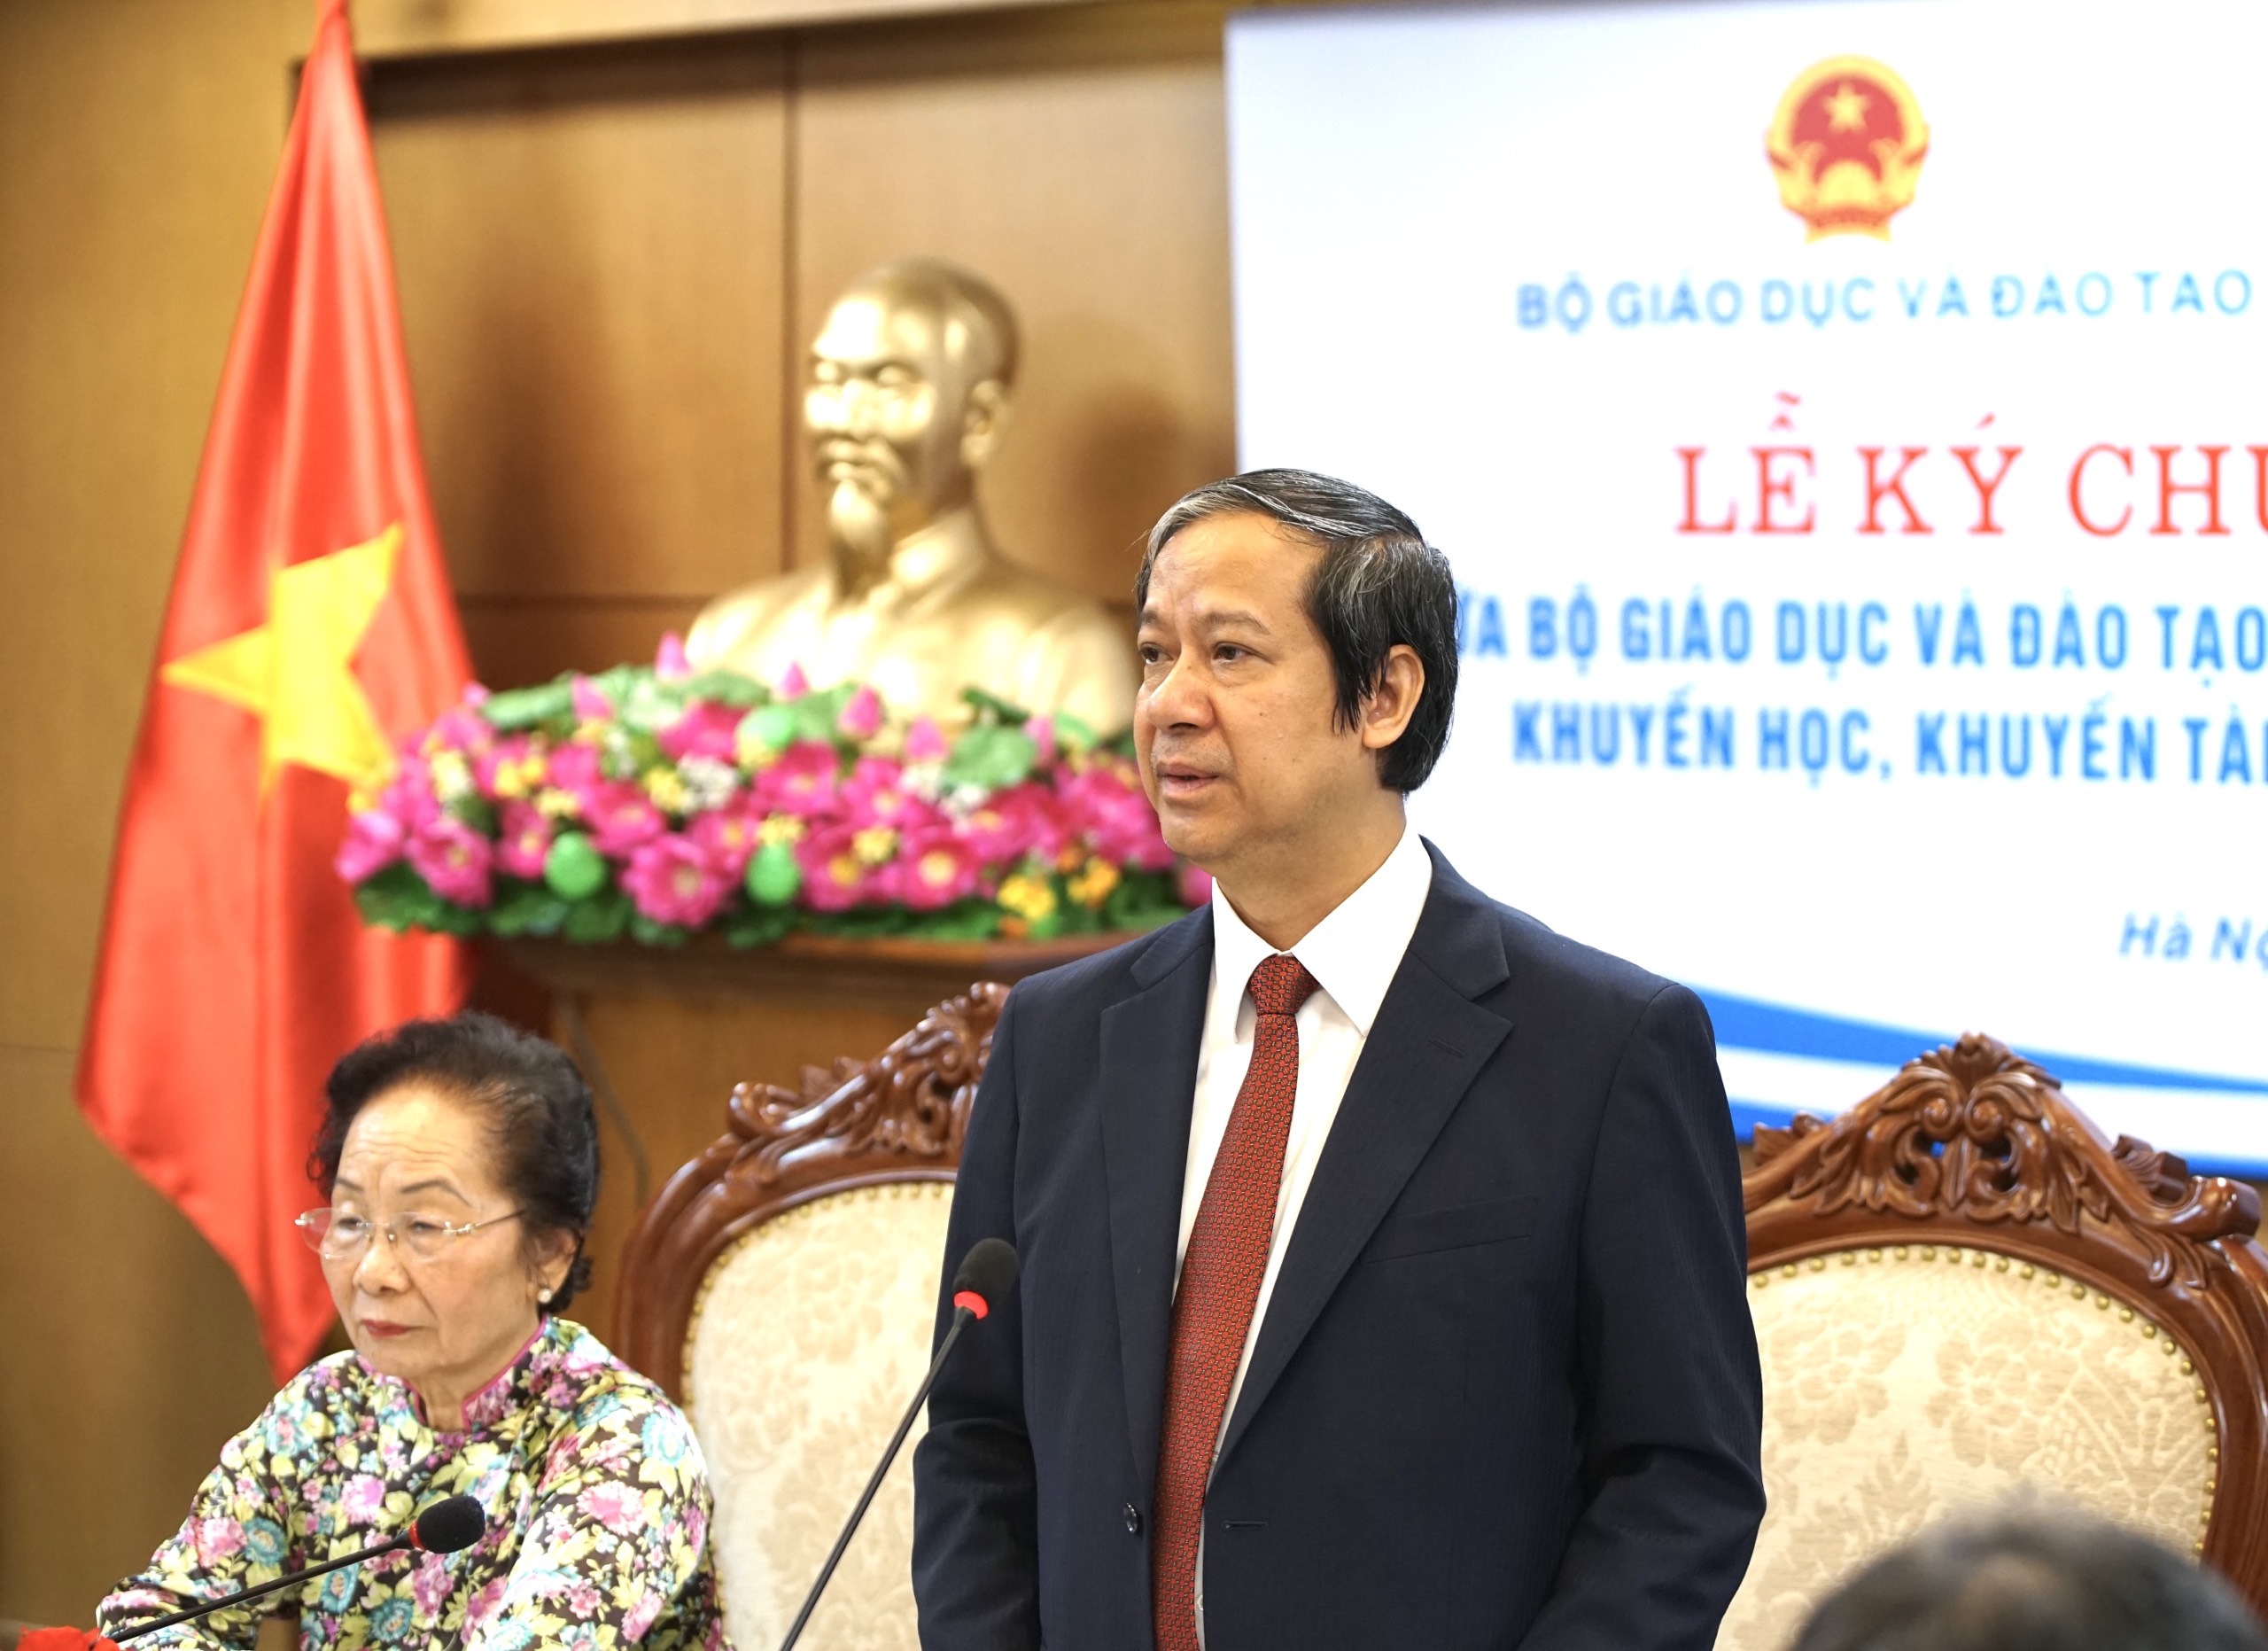 Bộ trưởng Bộ GD&ĐT Nguyễn Kim Sơn phát biểu.